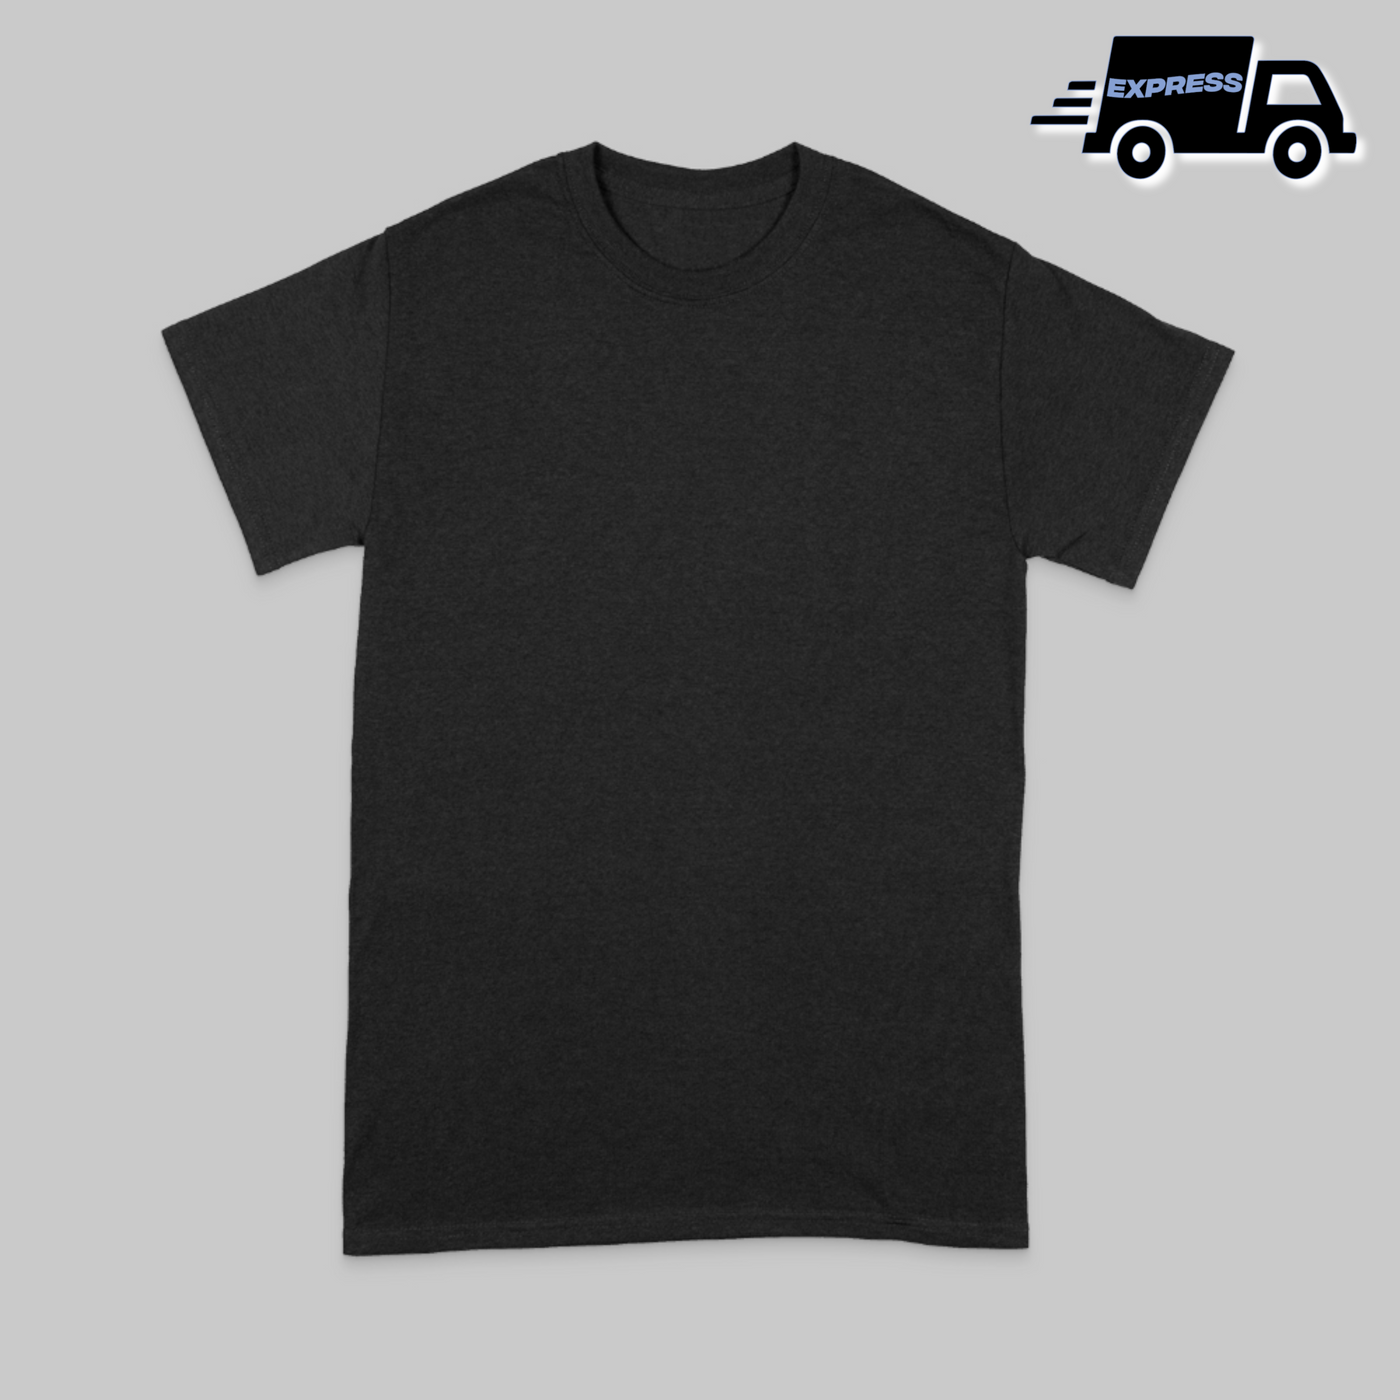 EXPRESS T-Shirt Premium bedrucken - S / Schwarz